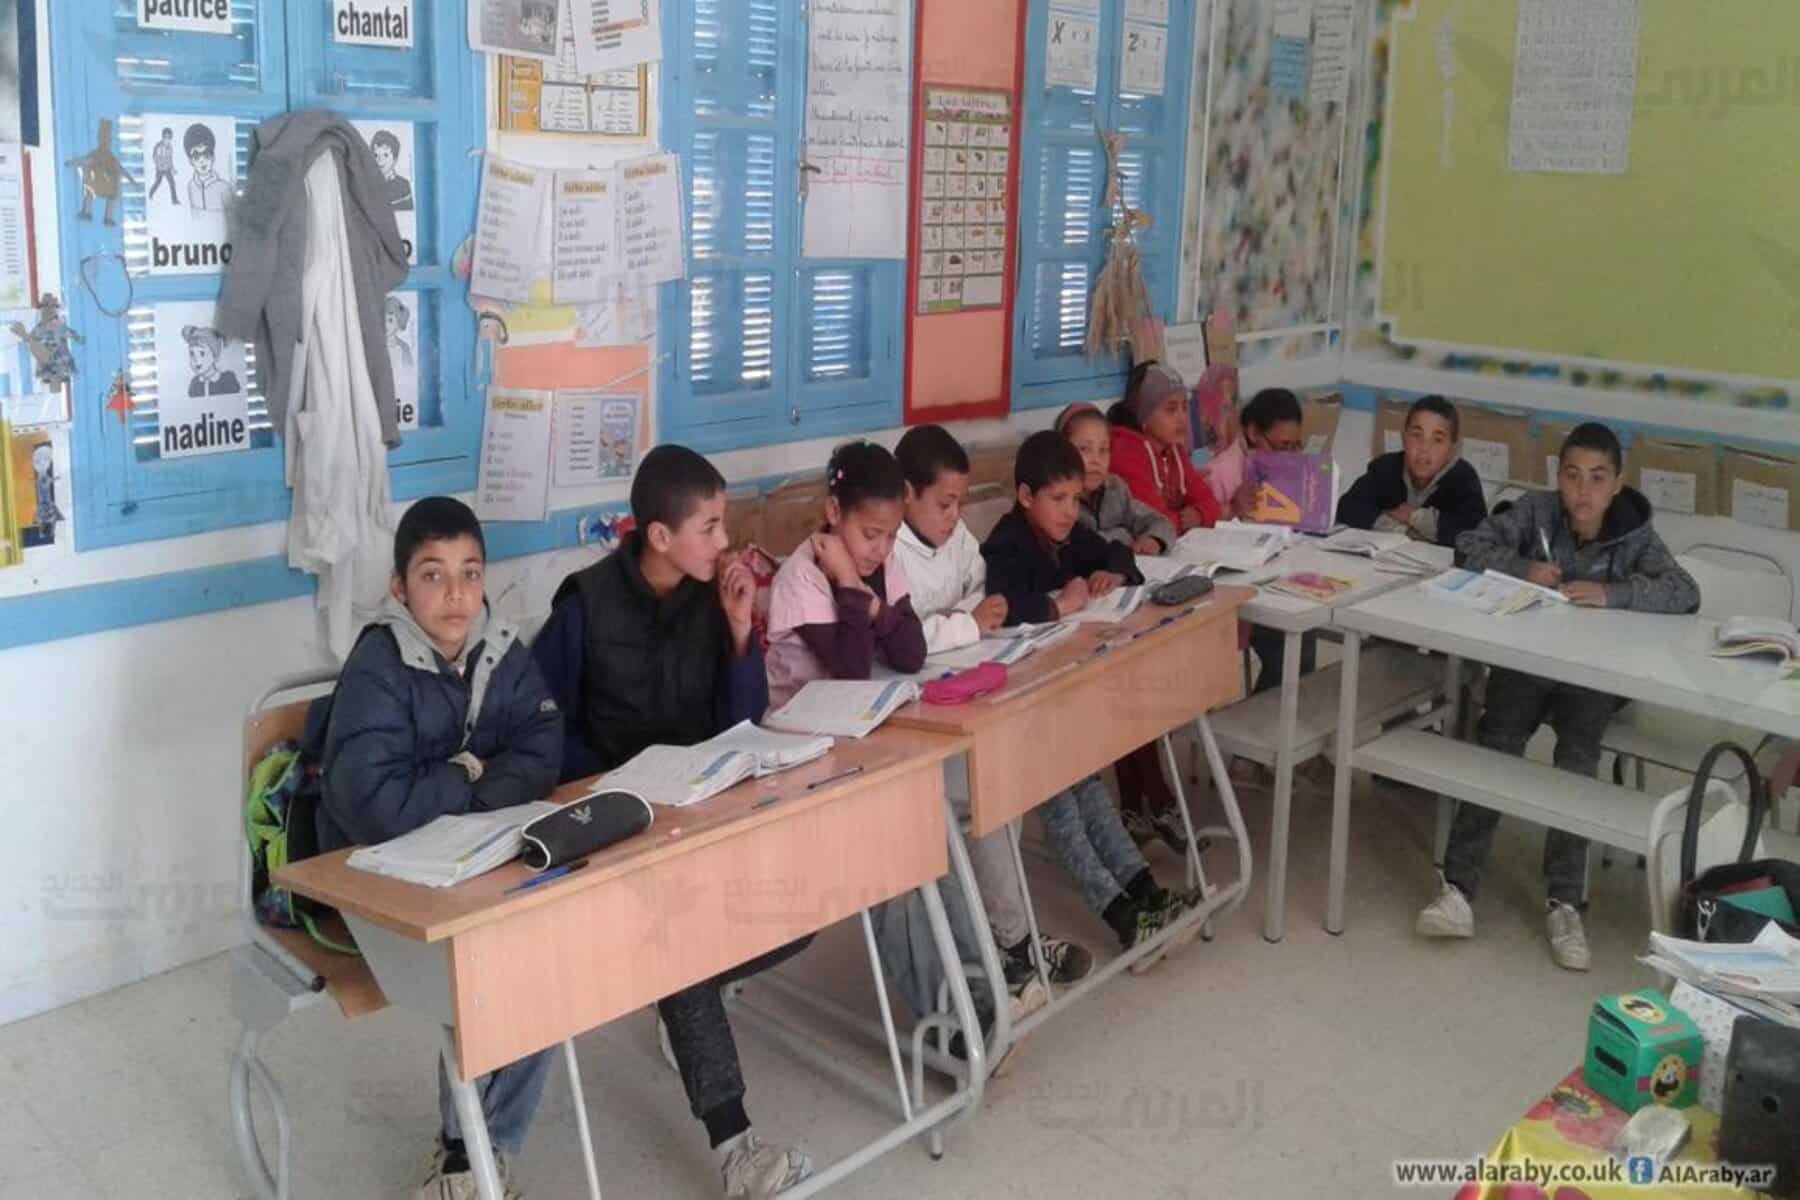 استقالة جماعية لمديري مدارس إبتدائية يثير الجدل في تونس...فما القصة؟